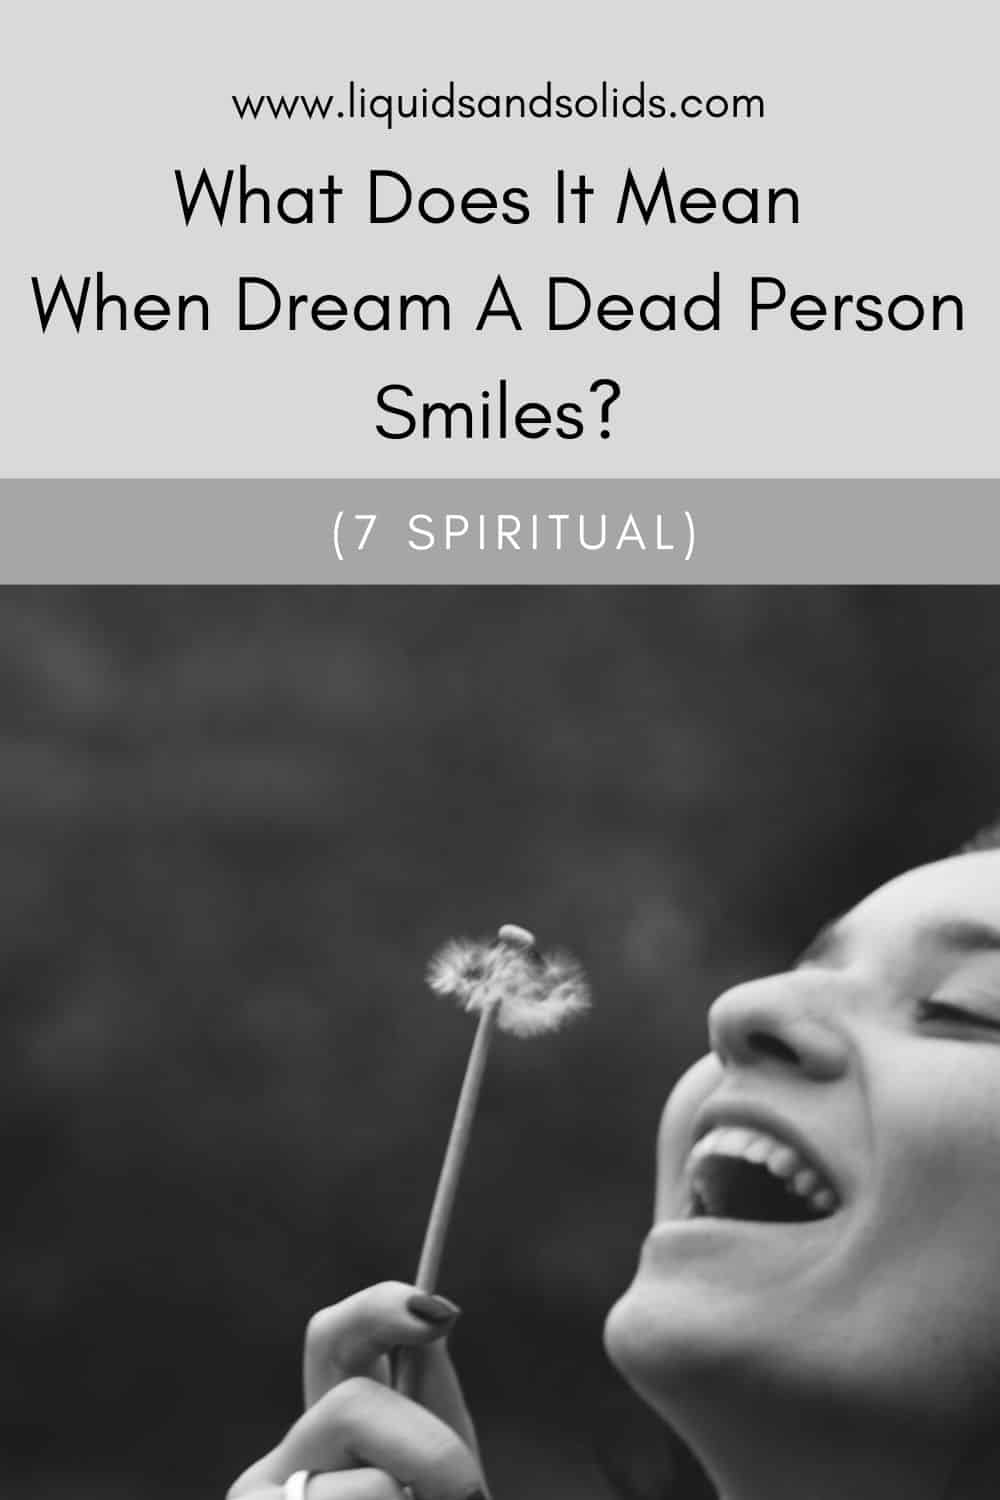  ماذا يعني أن يحلم ميت يبتسم؟ (7 معاني روحية)